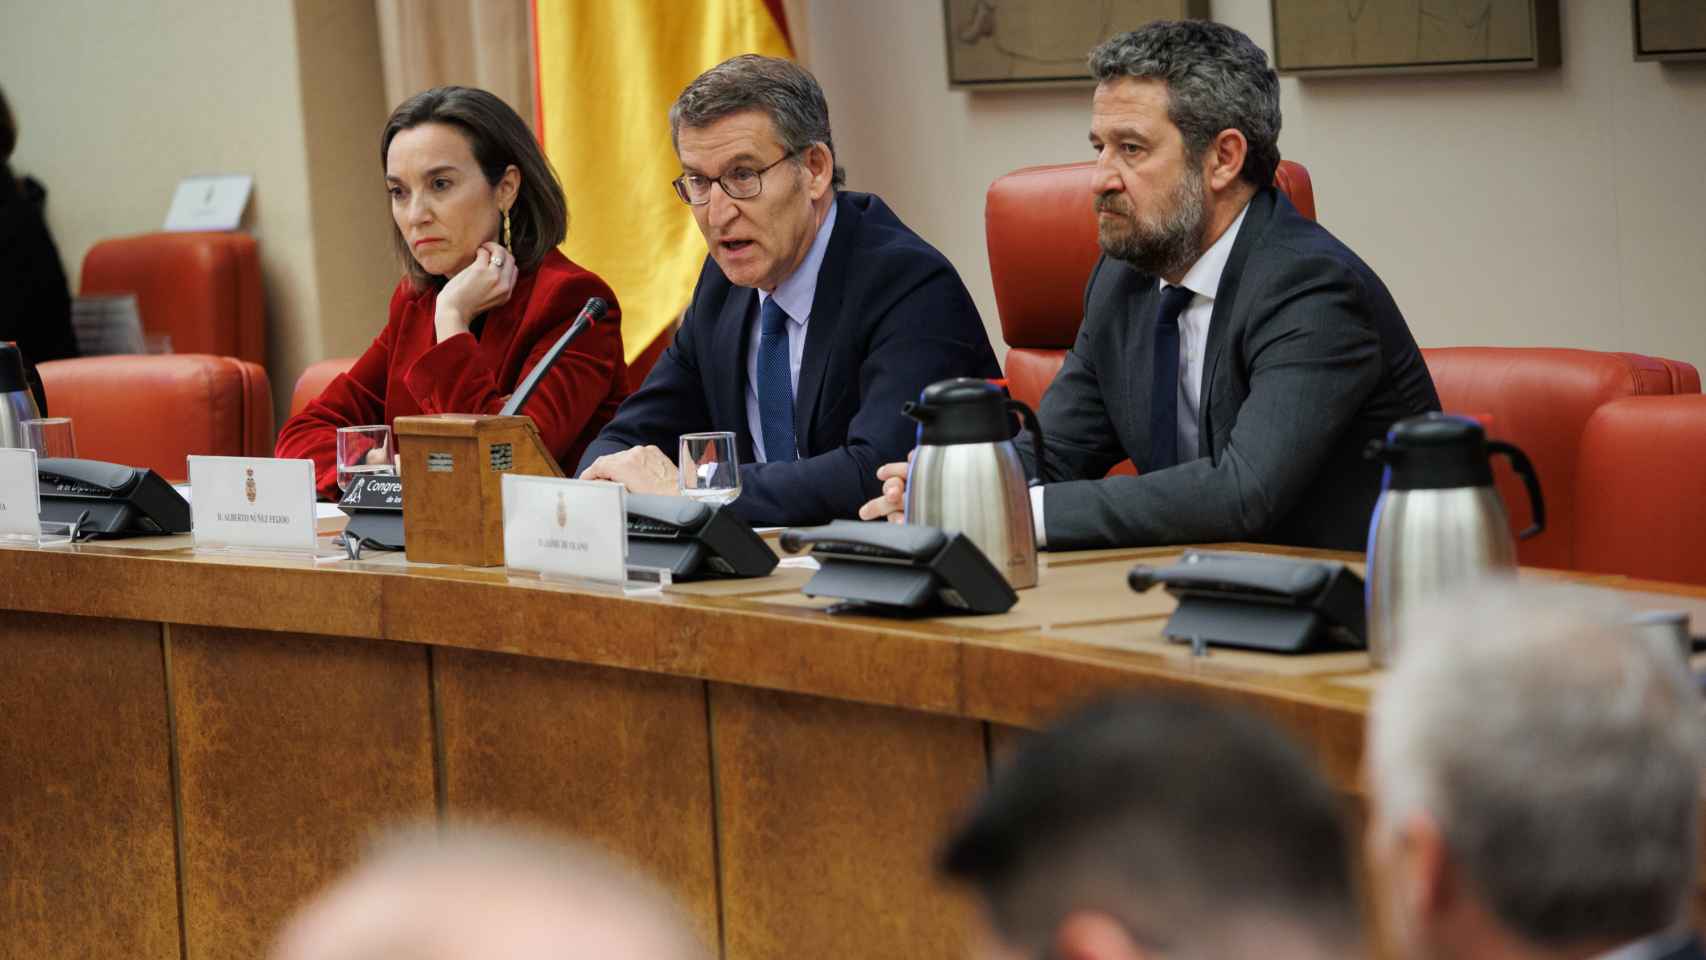 Cuca Gamarra, portavoz; Alberto Núñez Feijóo, presidente; y Jaime de Olano, coordinador del área económica del PP, en una reunión de diputados y senadores populares.